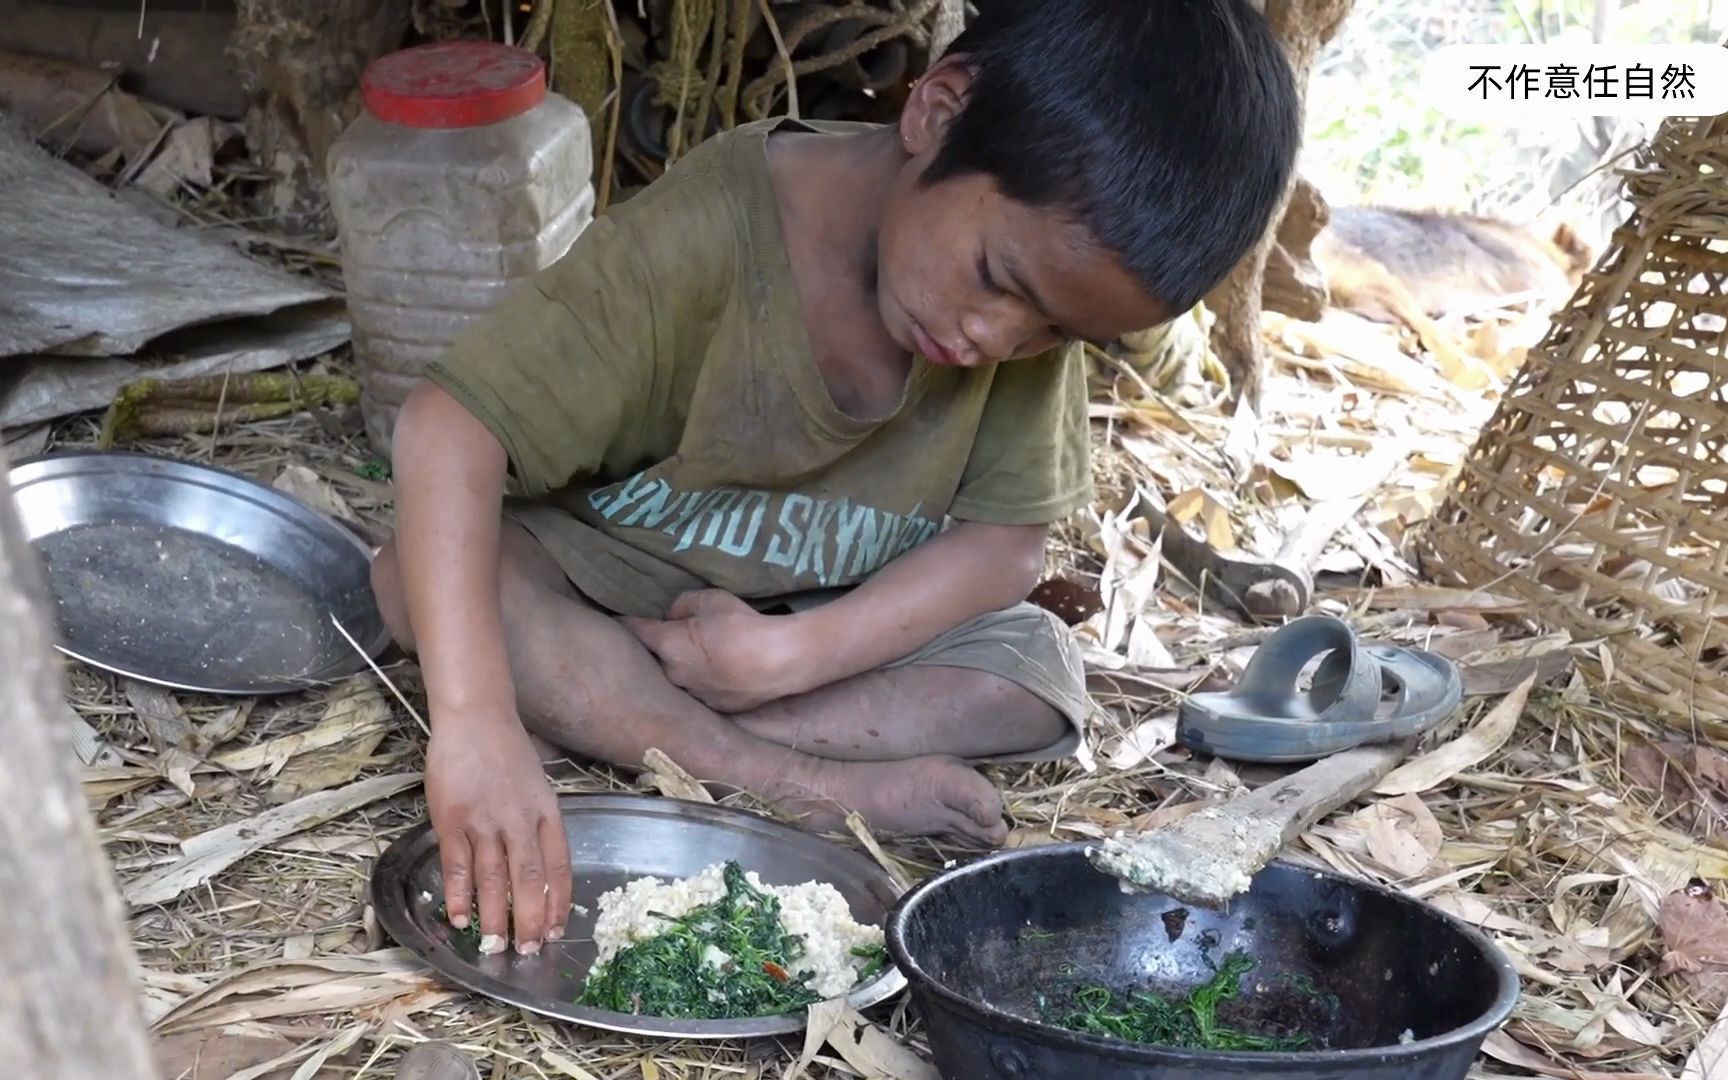 尼泊尔山区贫穷小男孩住草棚穿开裆裤用木棍炒野菜来填饱肚子动作娴熟